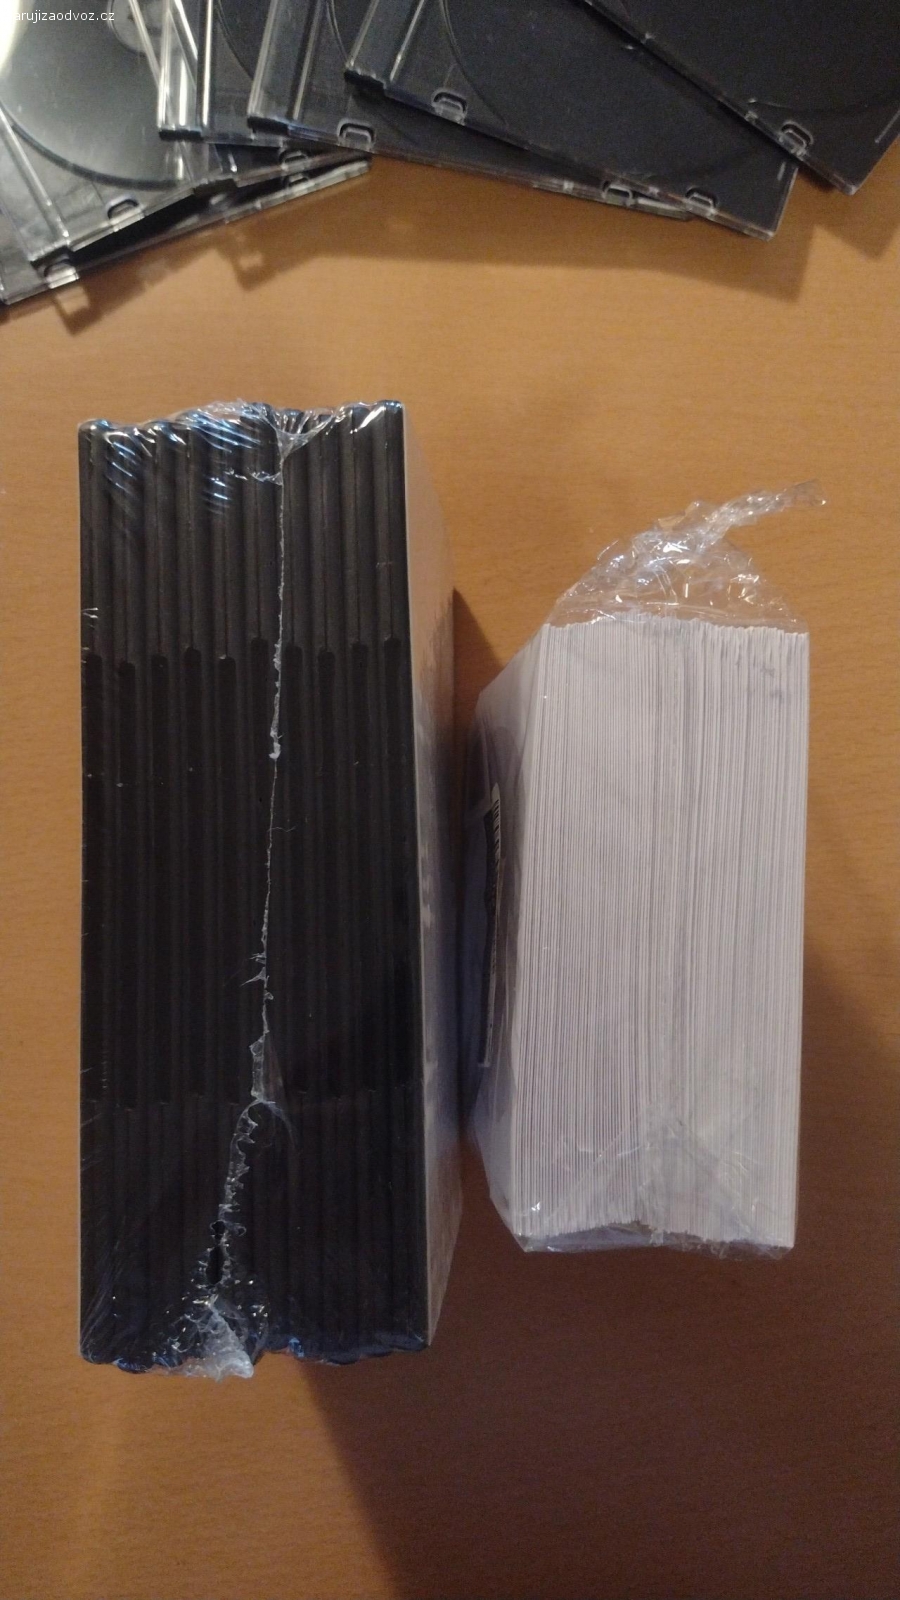 Obaly na CD. Papírové (cca 60 ks), plastové malé (7ks) a plastové velké (10ks). Předání ideálně metro Budějovická po domluvě.